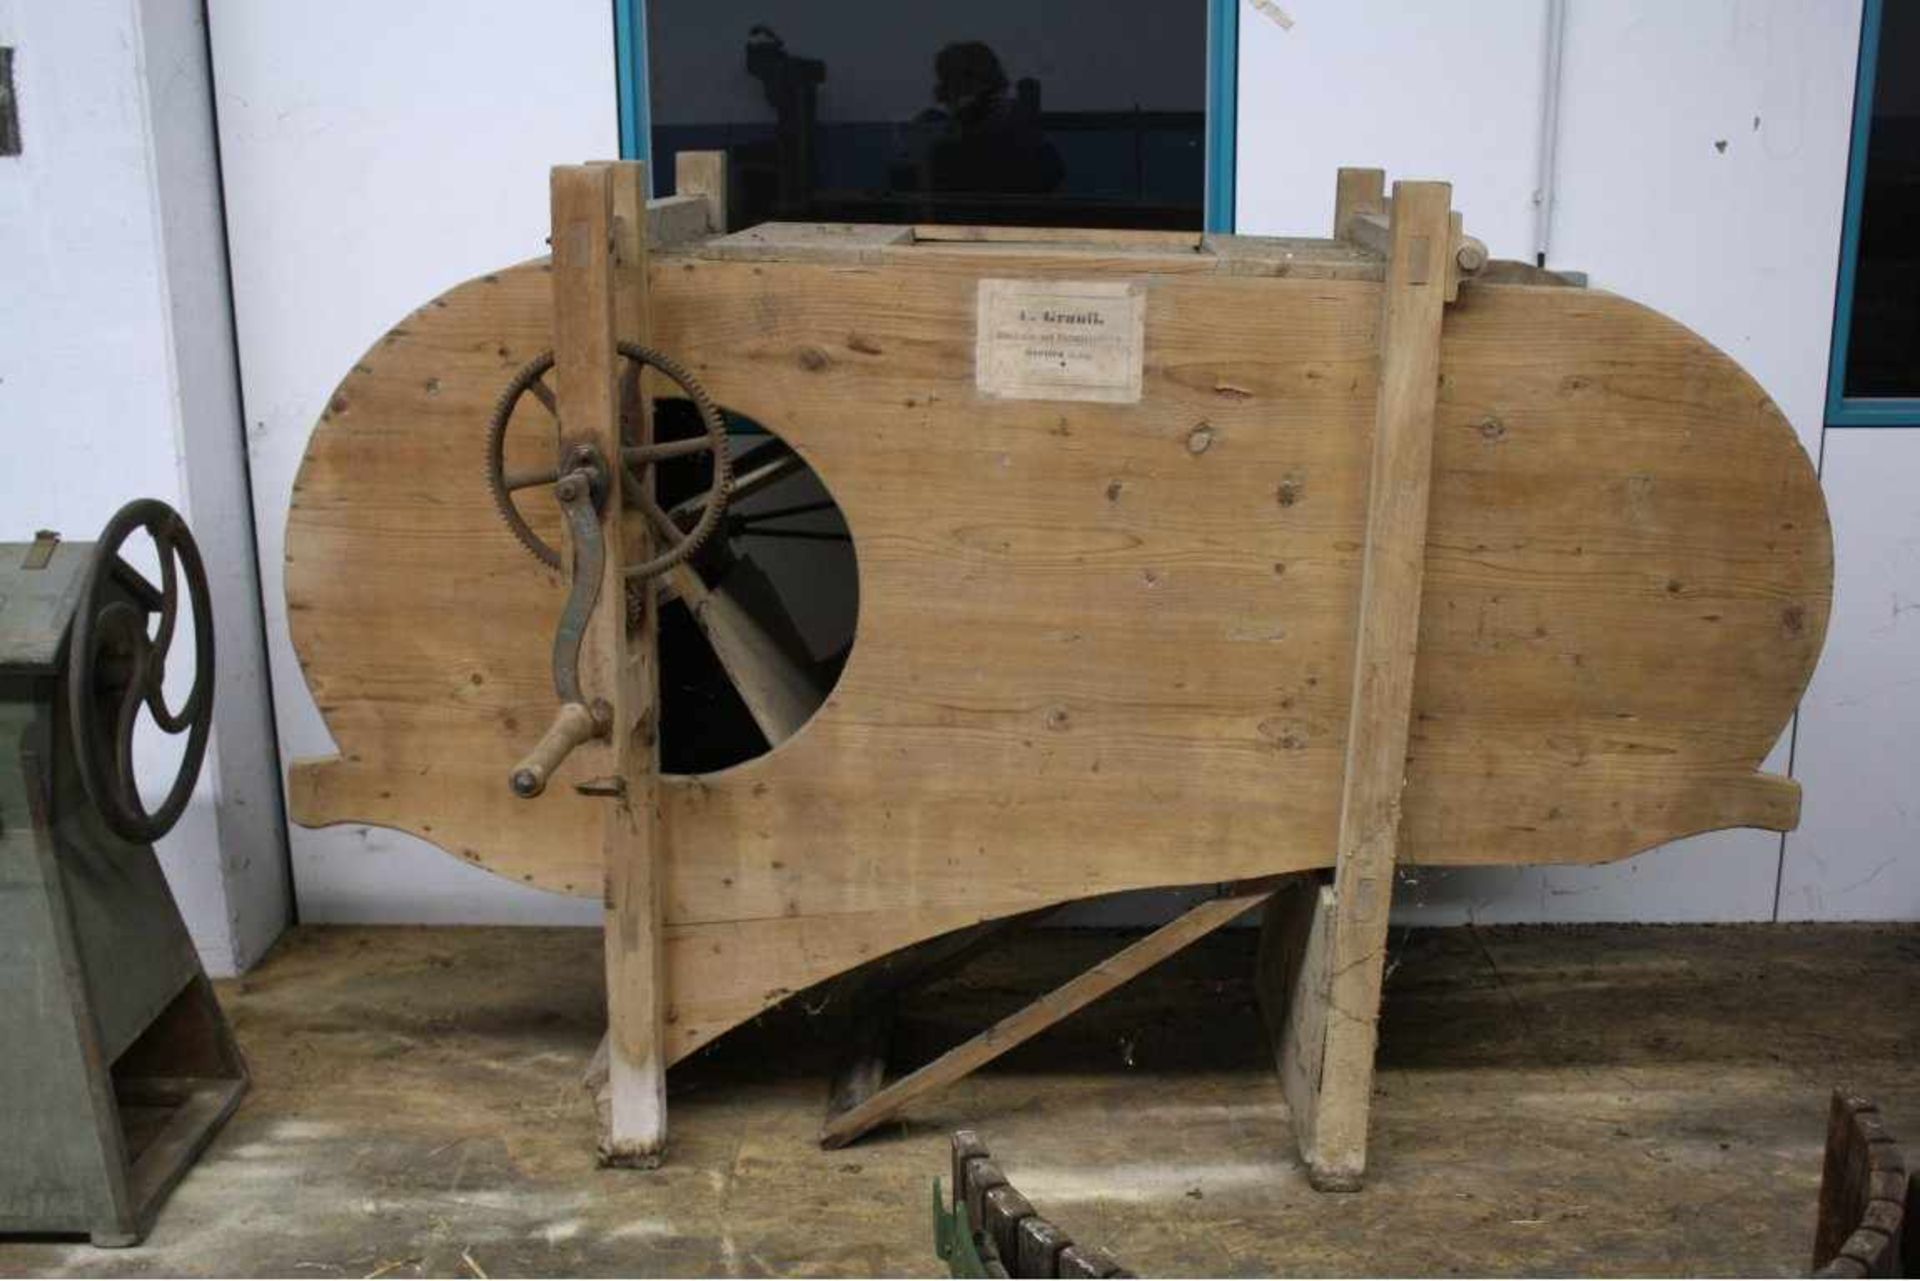 Landwirtschaftliche Maschine mit HolzgestellHerstellerbezeichnung C. Grauff Maschinen